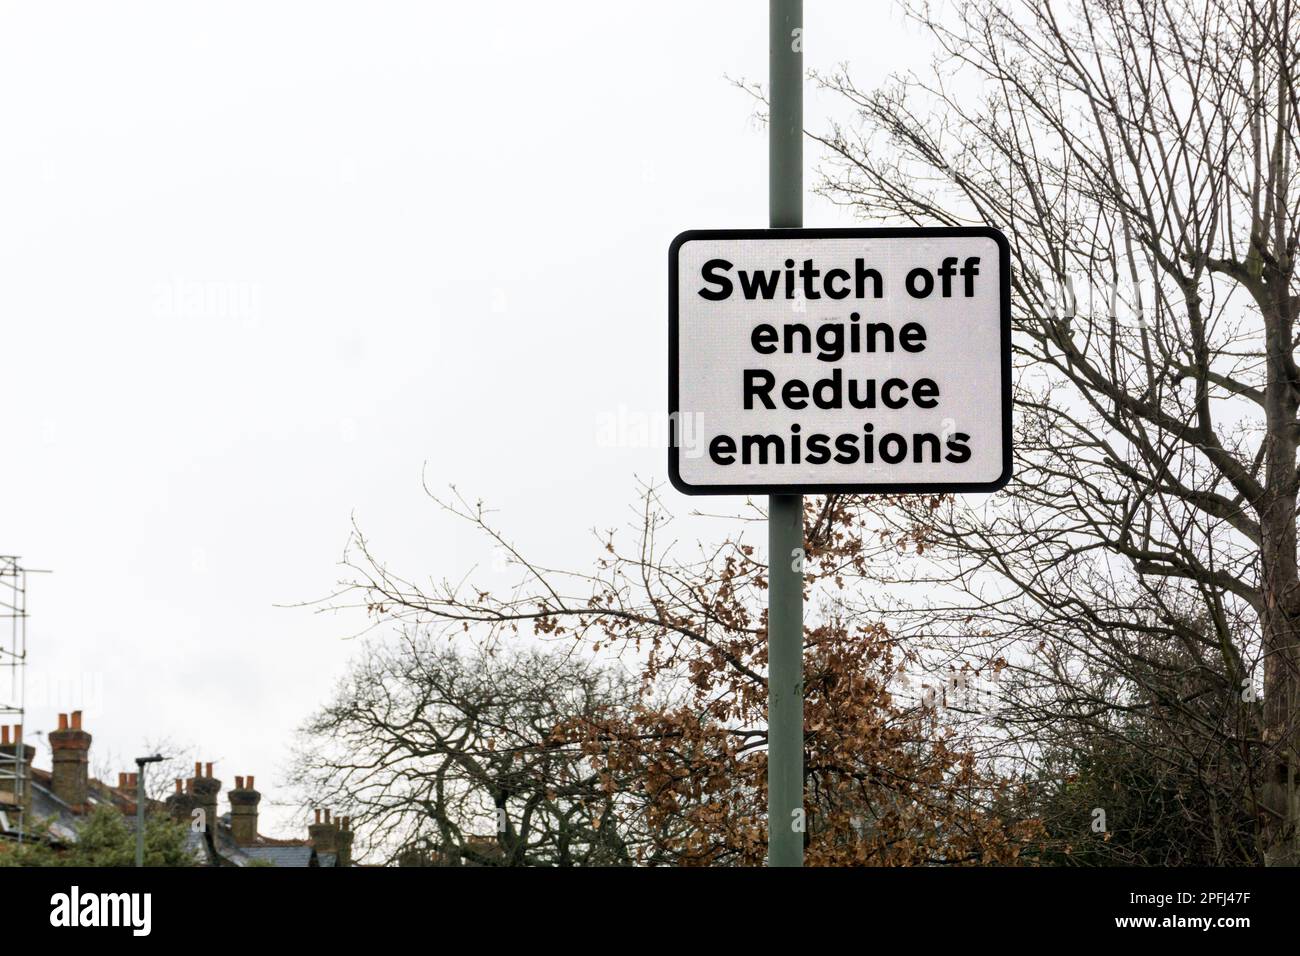 Un cartello stradale nel sud di Londra consiglia ai conducenti di spegnere i motori delle loro auto per ridurre le emissioni. Foto Stock